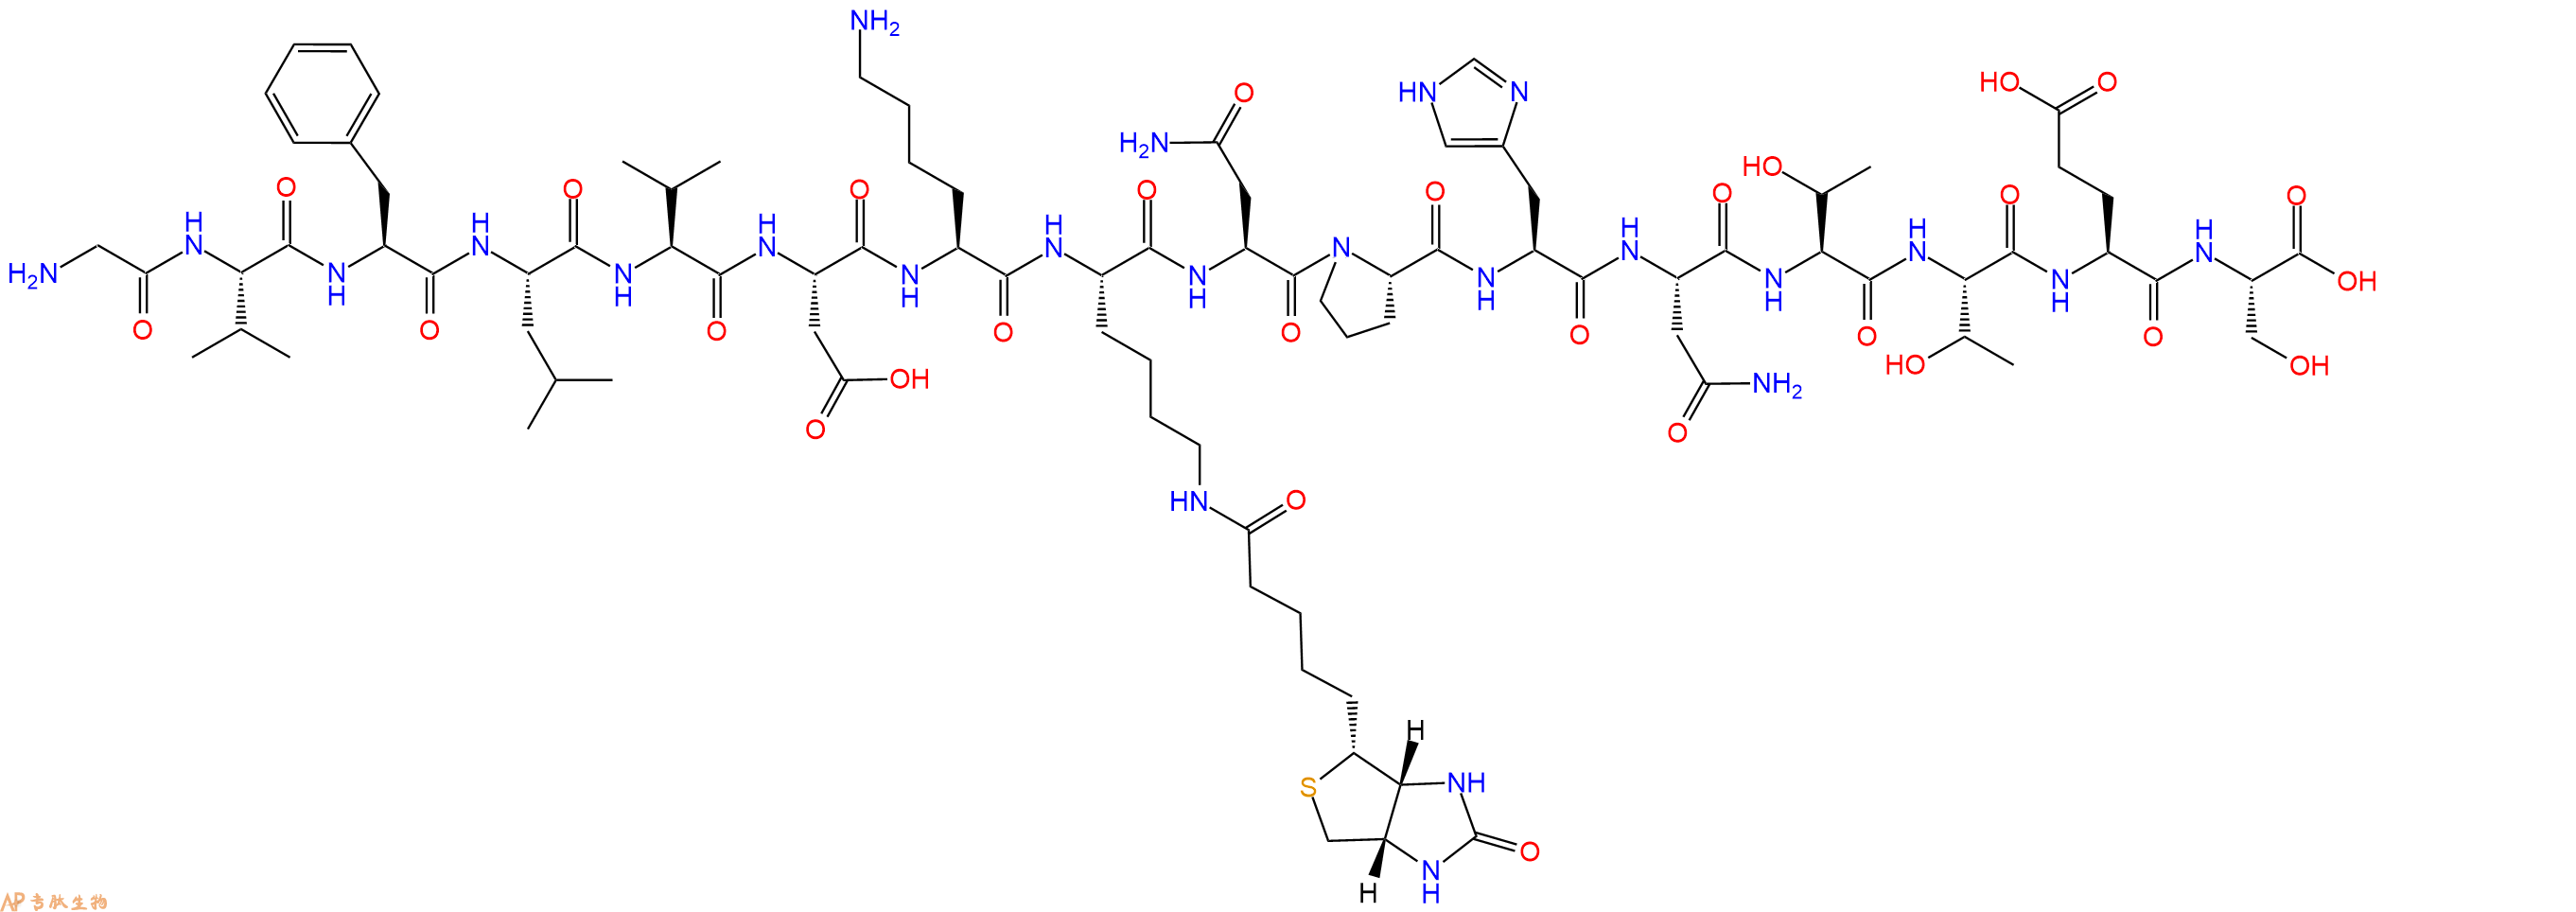 专肽生物产品H2N-Gly-Val-Phe-Leu-Val-Asp-Lys-Lys(Biotin)-Asn-Pr